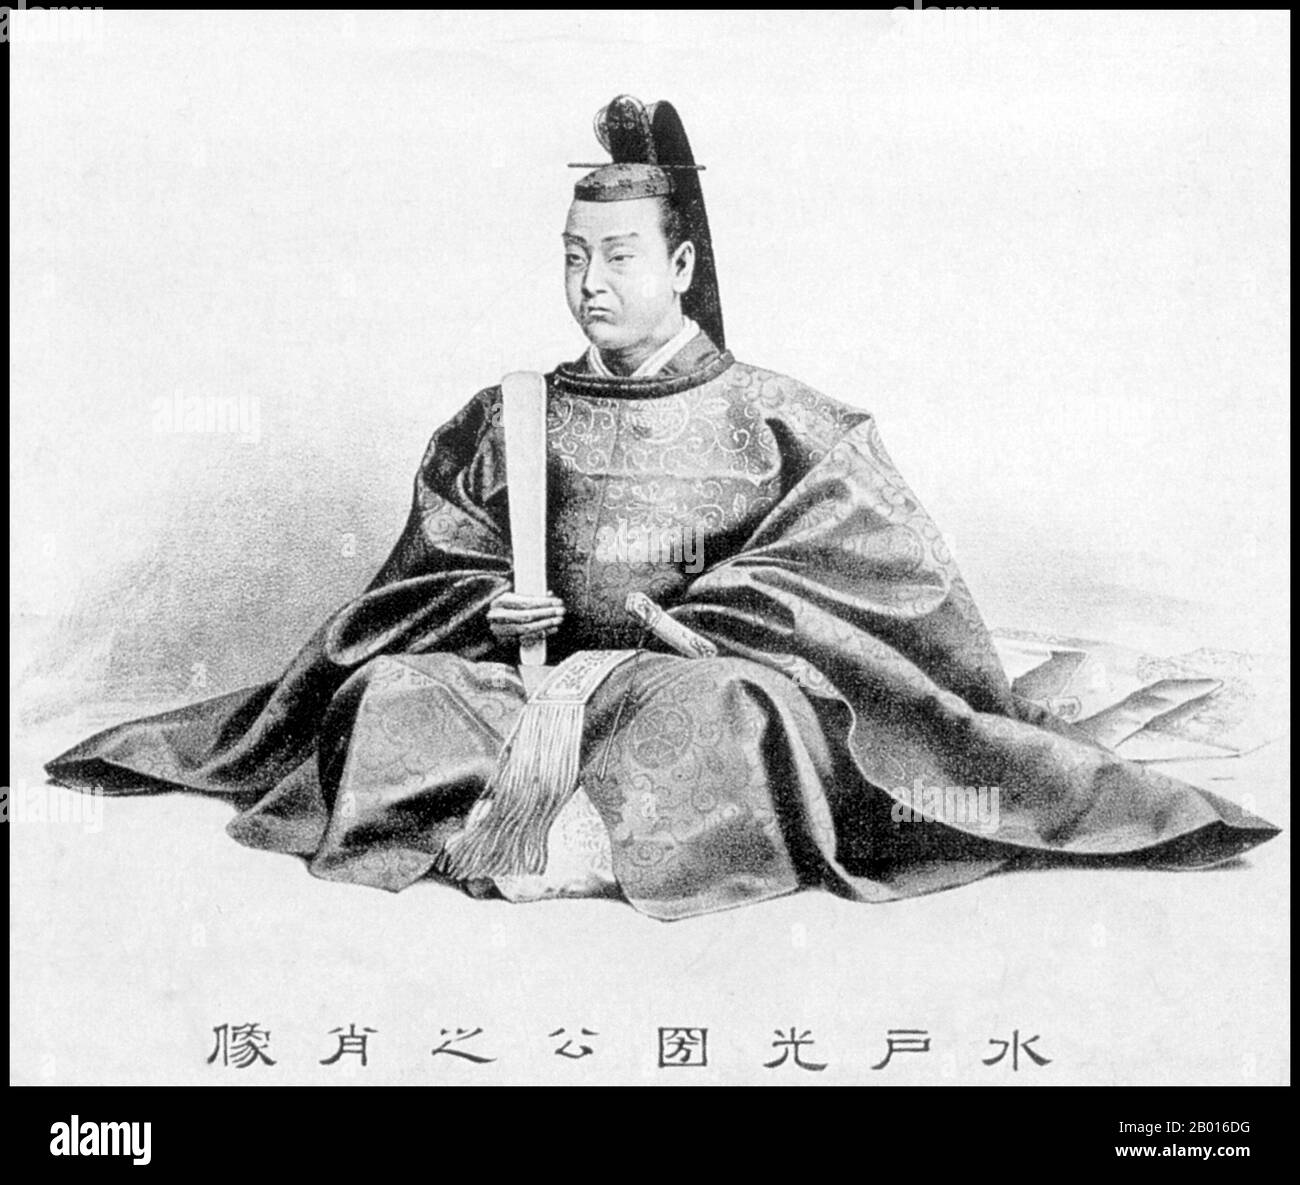 Japan: Tokugawa Mitsukini (11. Juli 1628 - 14. Januar 1701), Daimyo von Mito (r. 1661-1691). Illustration, c. Ende des 19. Jahrhunderts. Tokugawa Mitsukuni, auch bekannt als Mito Komon und geborener Chomaru, war ein wichtiger Daimyo, der für seinen Einfluss in der Politik der frühen Edo-Zeit bekannt war. Als dritter Sohn von Tokugawa Yorifusa (der wiederum der elfte Sohn von Shogun Tokugawa Ieyasu war) folgte ihm Mitsukuni auf, der zweite Daimyo der Mito-Domäne zu werden. Er war für die Zusammenstellung von Gelehrten verantwortlich, um eine präzise Aufzeichnung der japanischen Geschichte zu erstellen, die „Dai Nihonshi“ genannt wurde. Er wird als Kami verehrt. Stockfoto